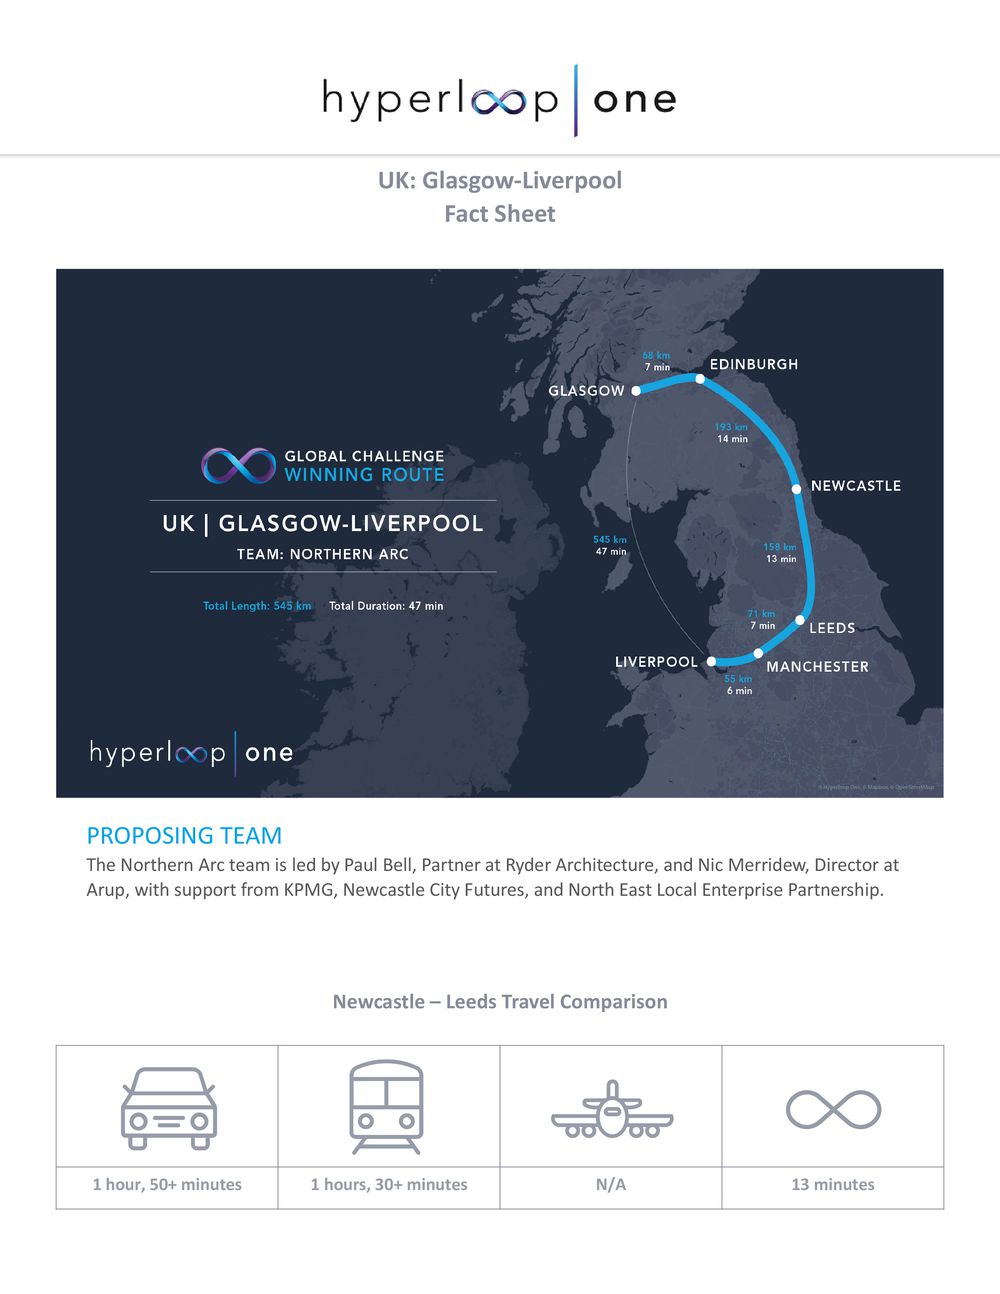 InnoTech Ukraine: Визначено 10 маршрутів Hyperloop у різних куточках світу